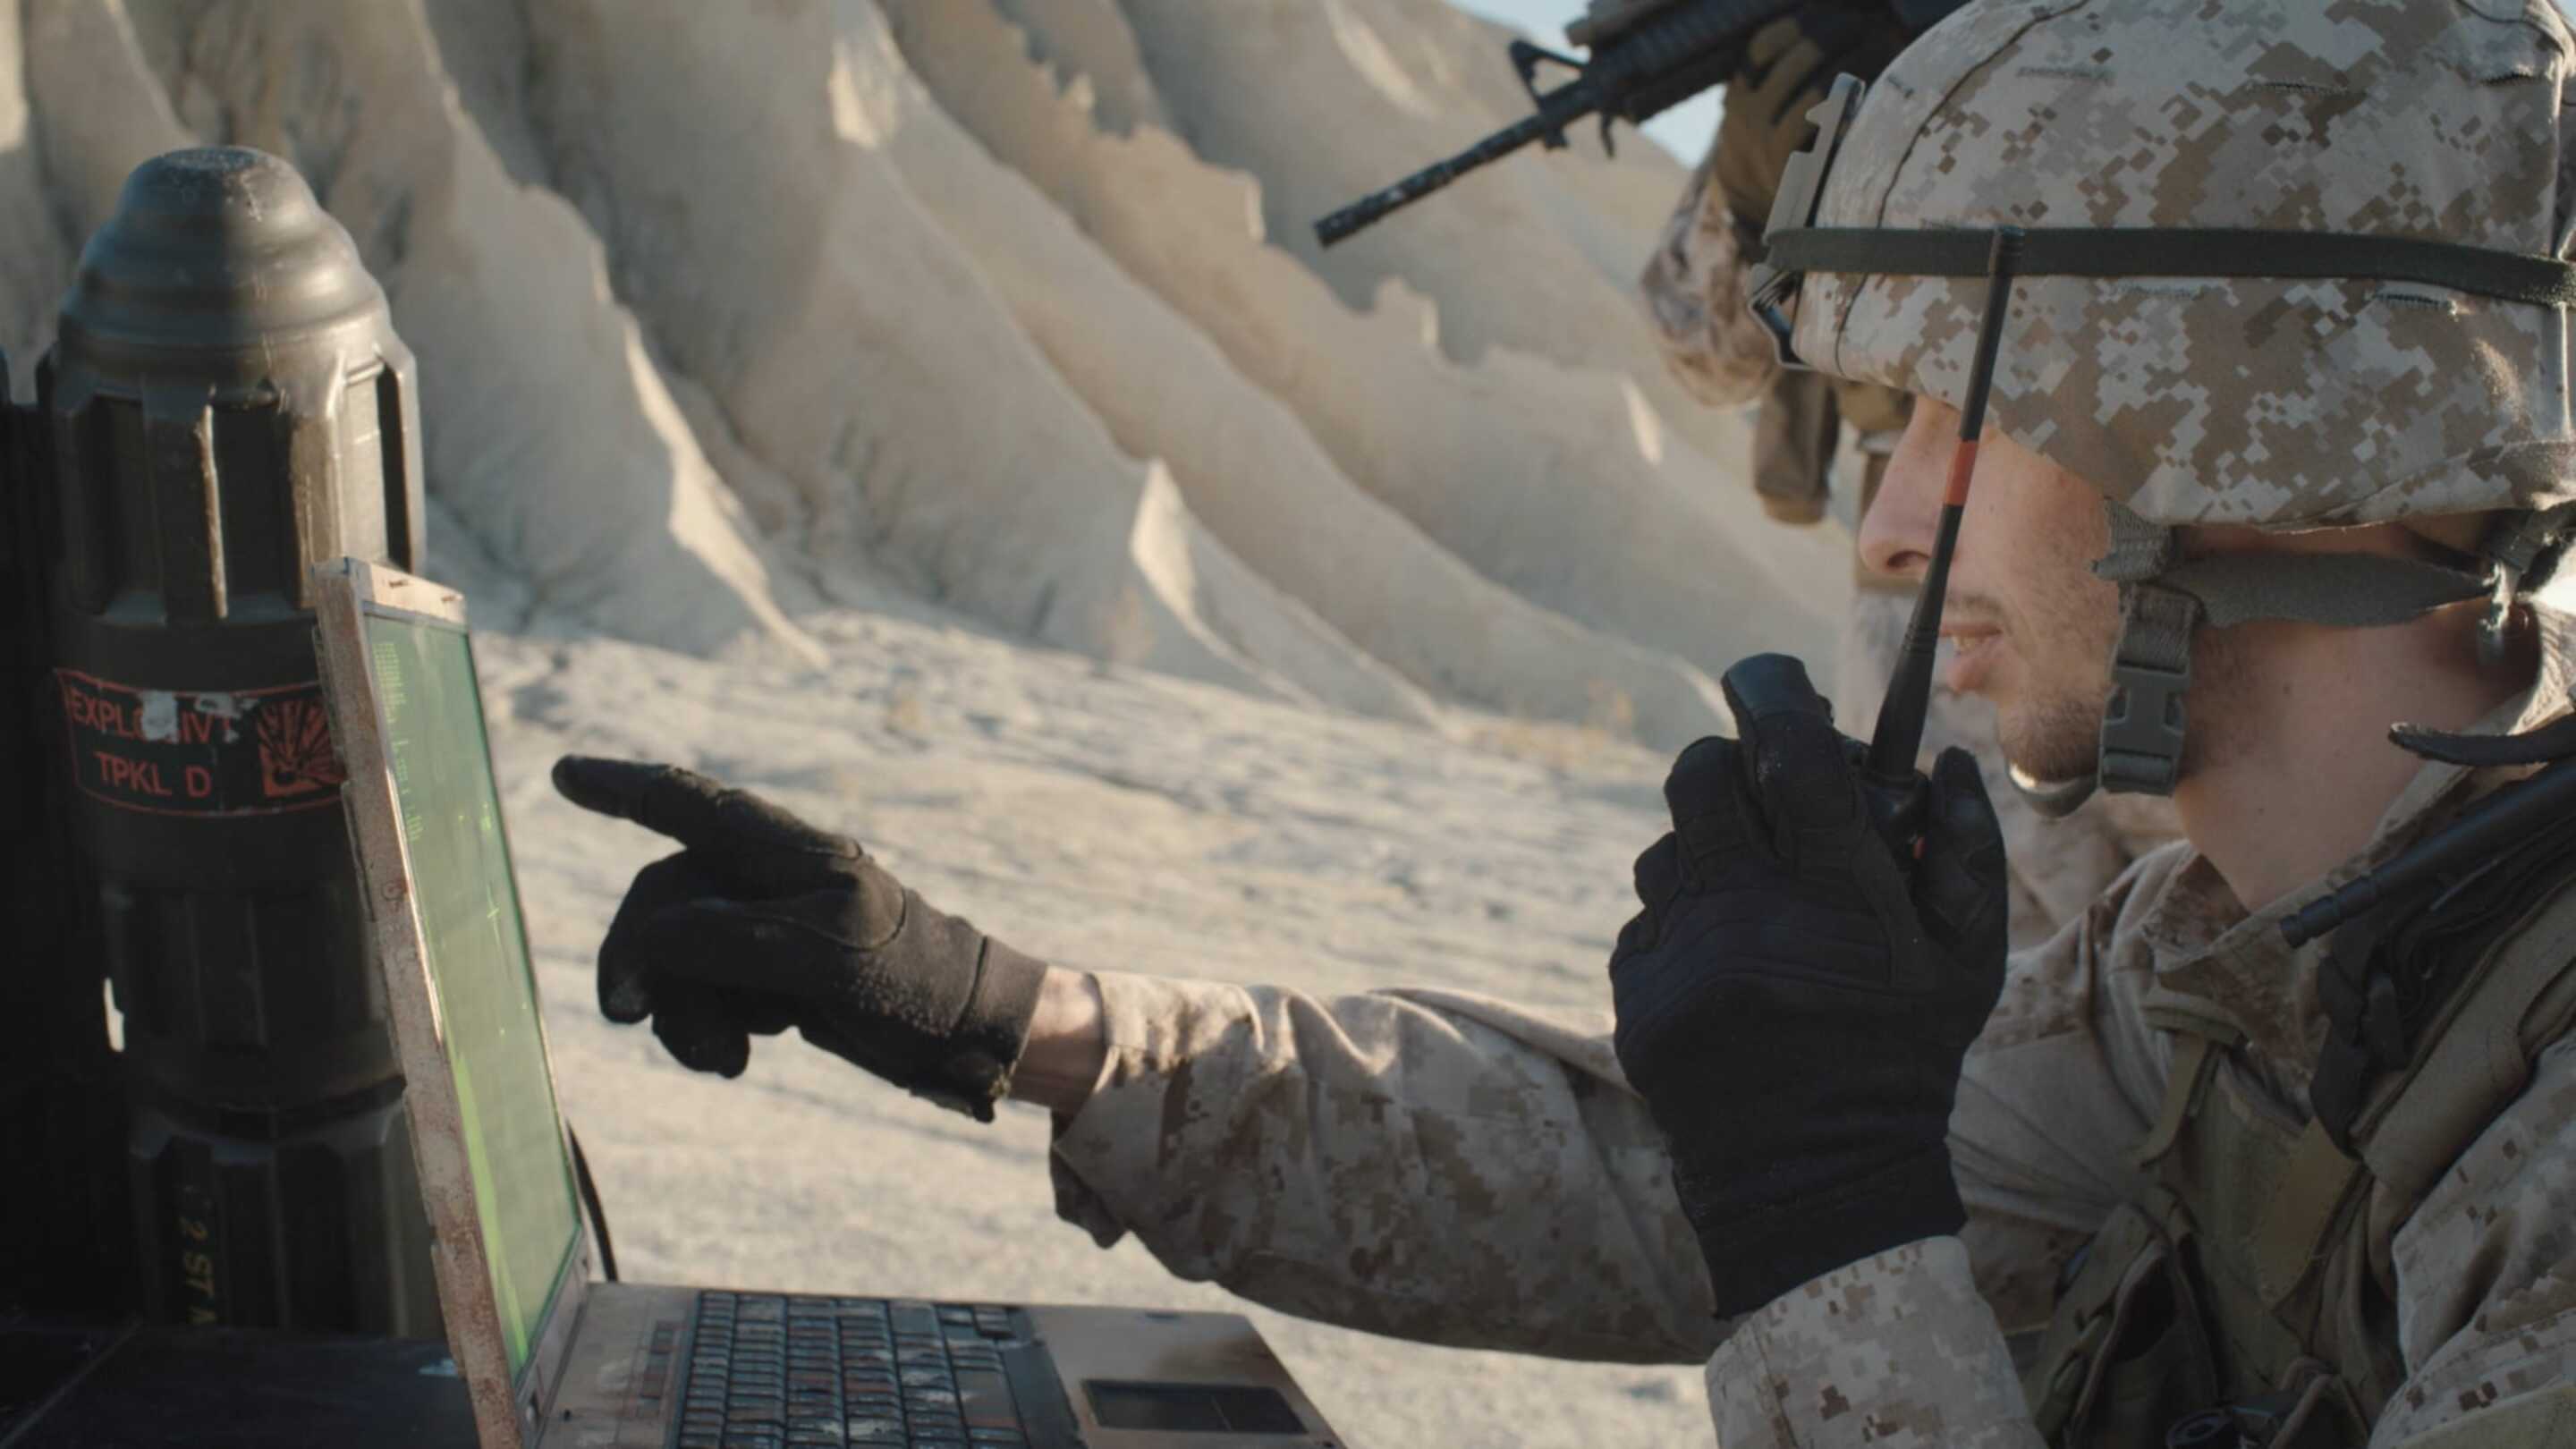 Tempest - 军事触摸屏一个穿着军装的男人使用笔记本电脑